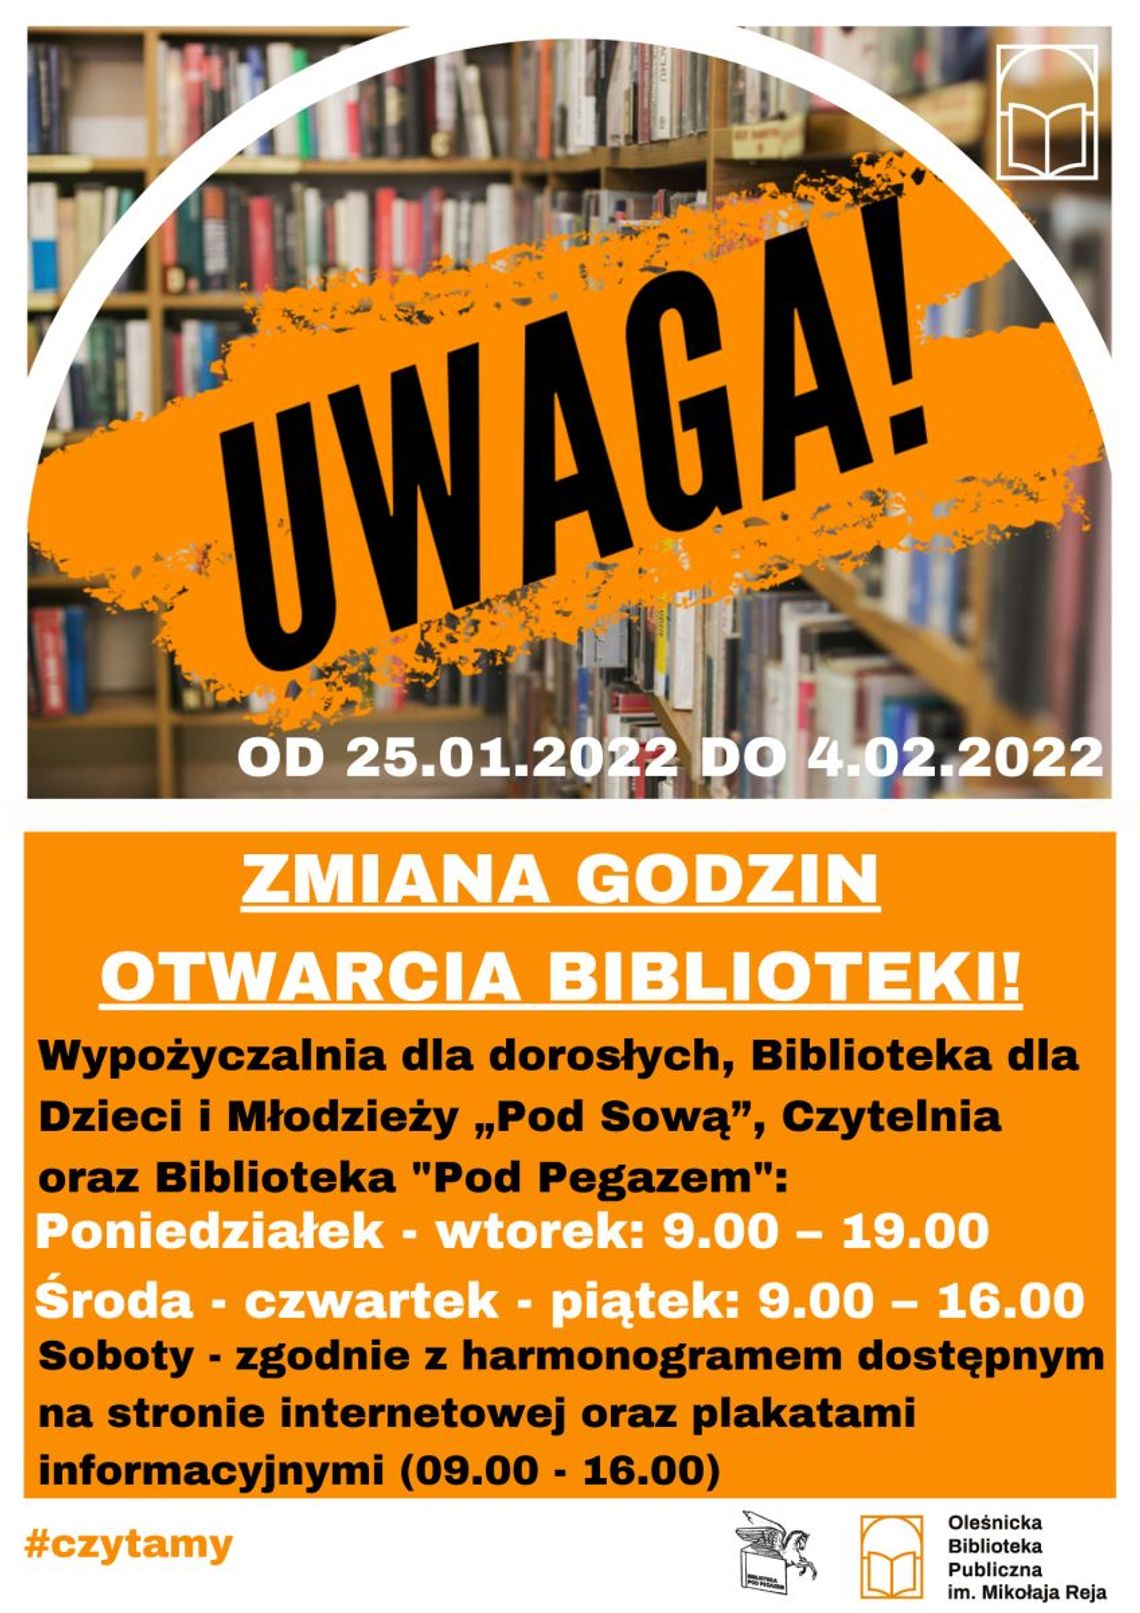 Uwaga: Zmiana godzin otwarcia biblioteki w Oleśnicy